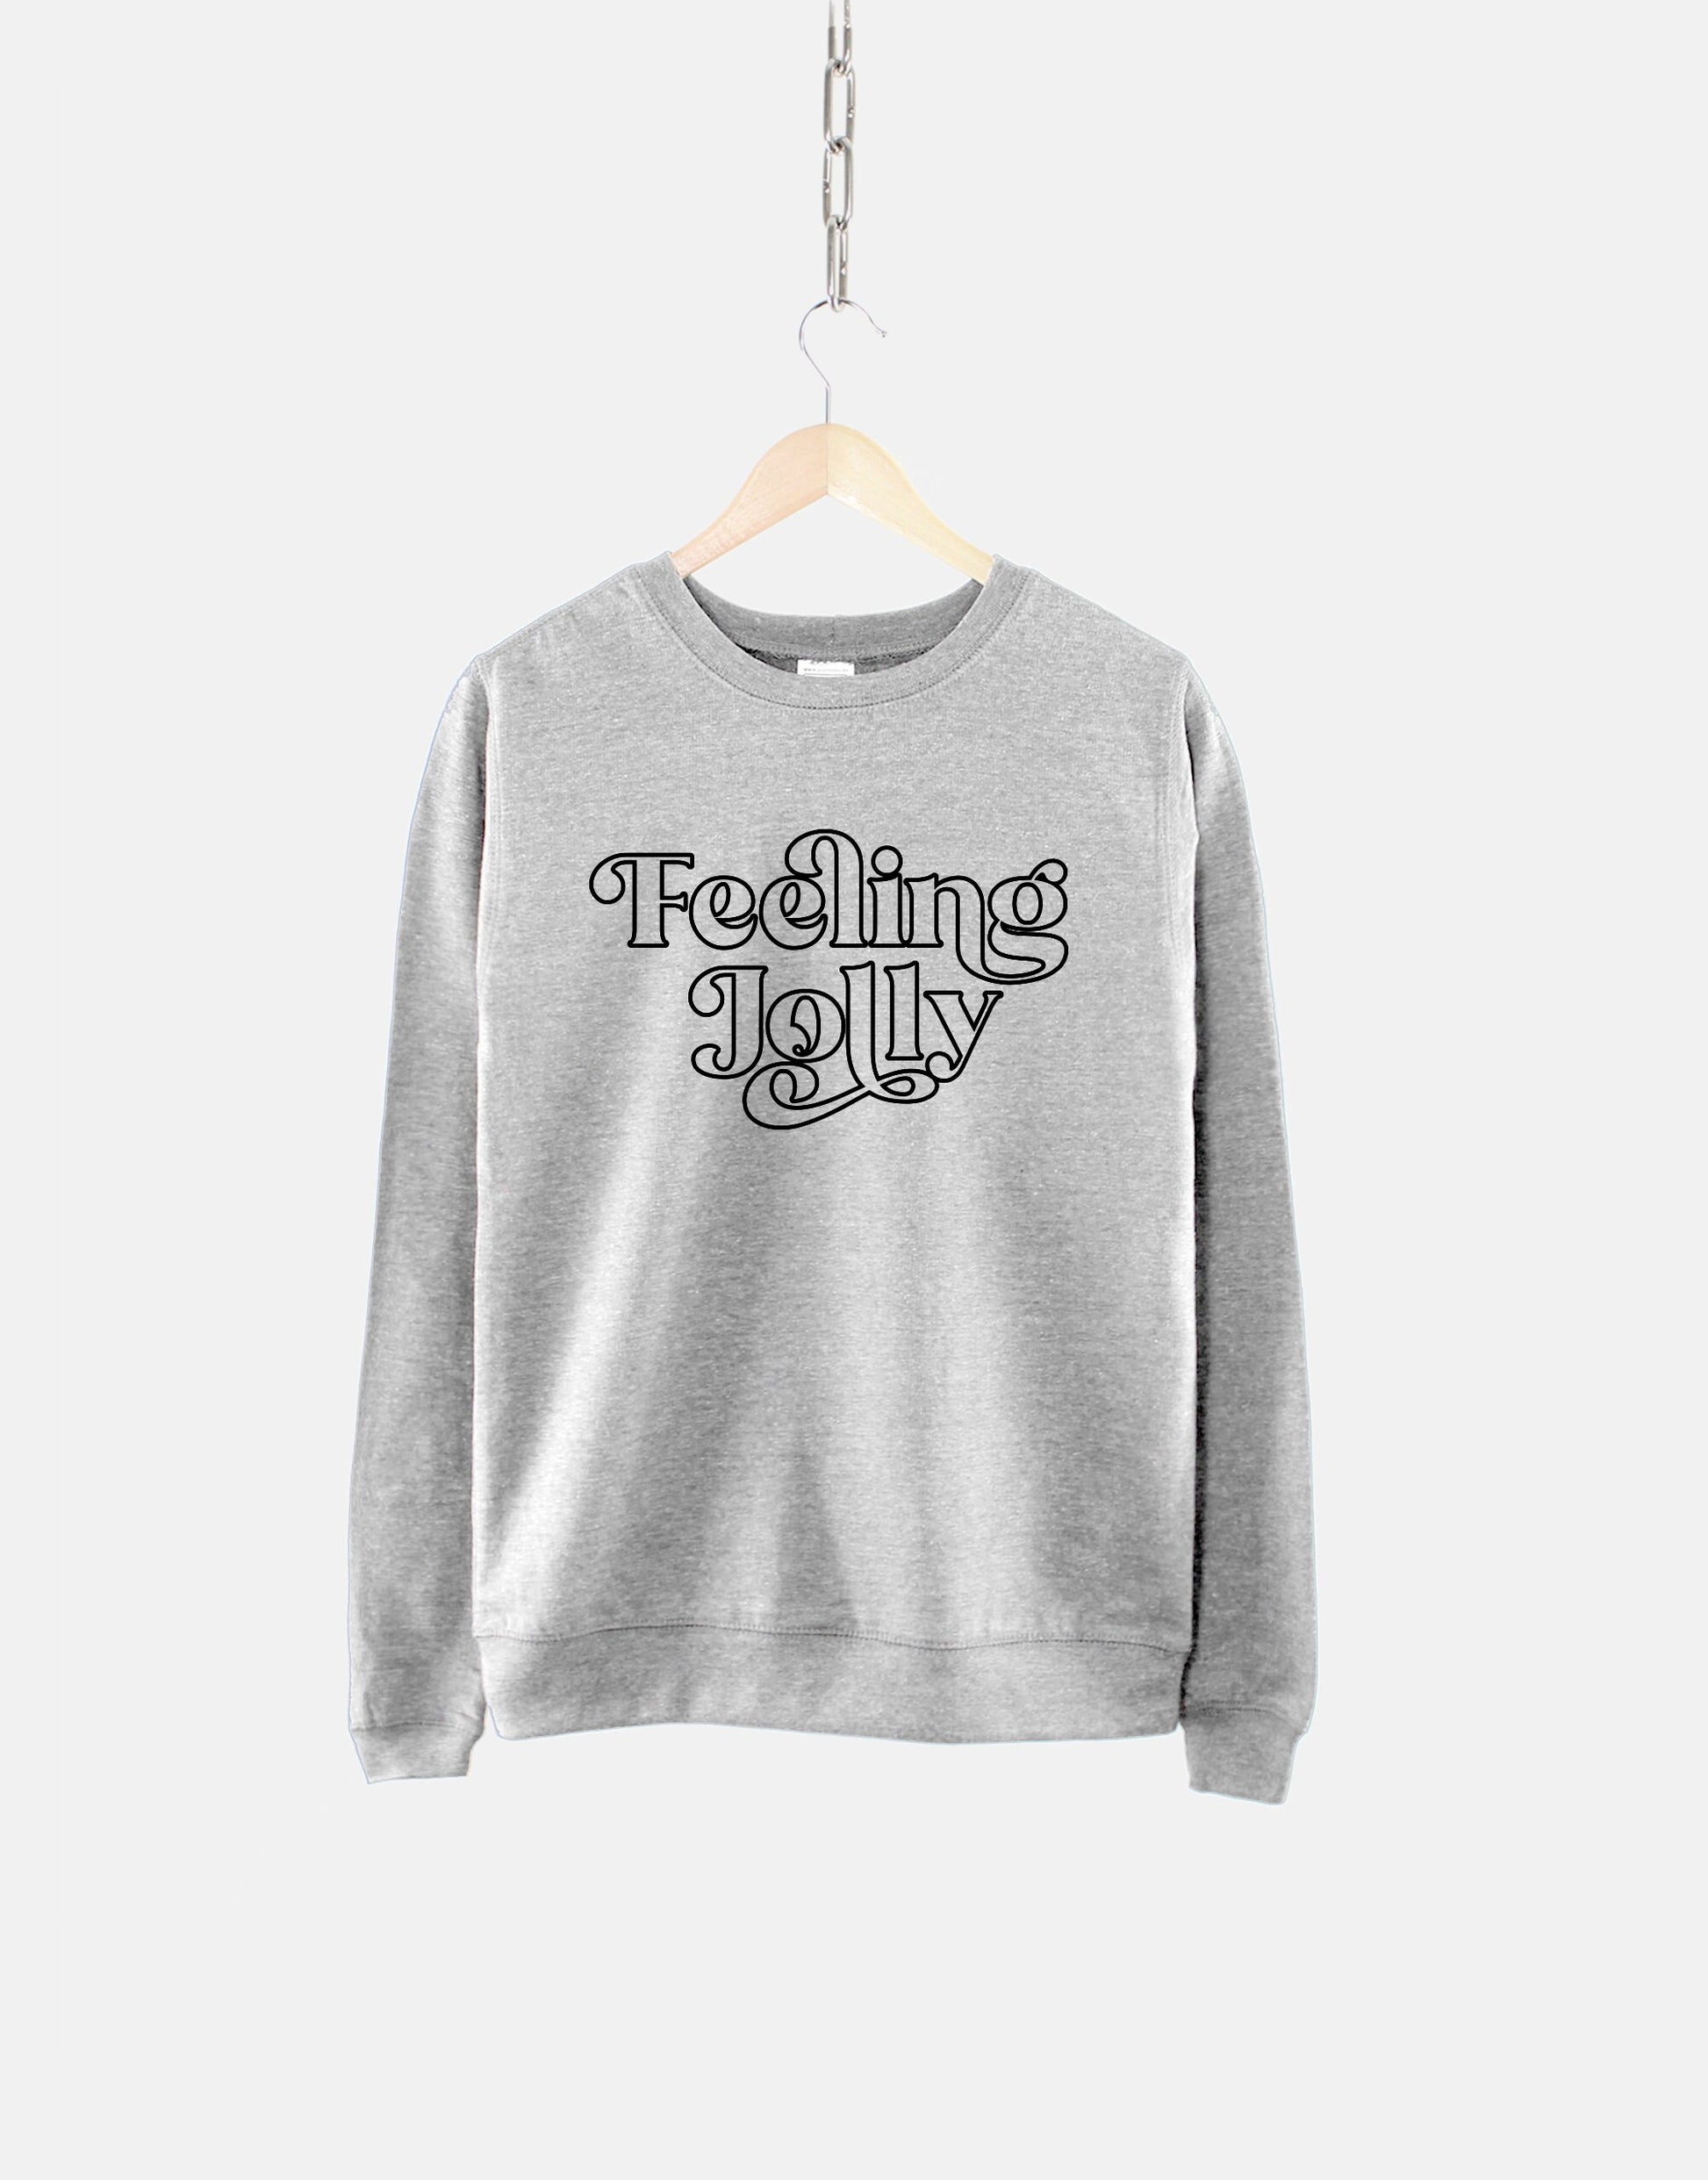 Feeling Jolly Christmas Chri – Christmas Sweatshirt - - Qurious Shop Retro Sweatshirt